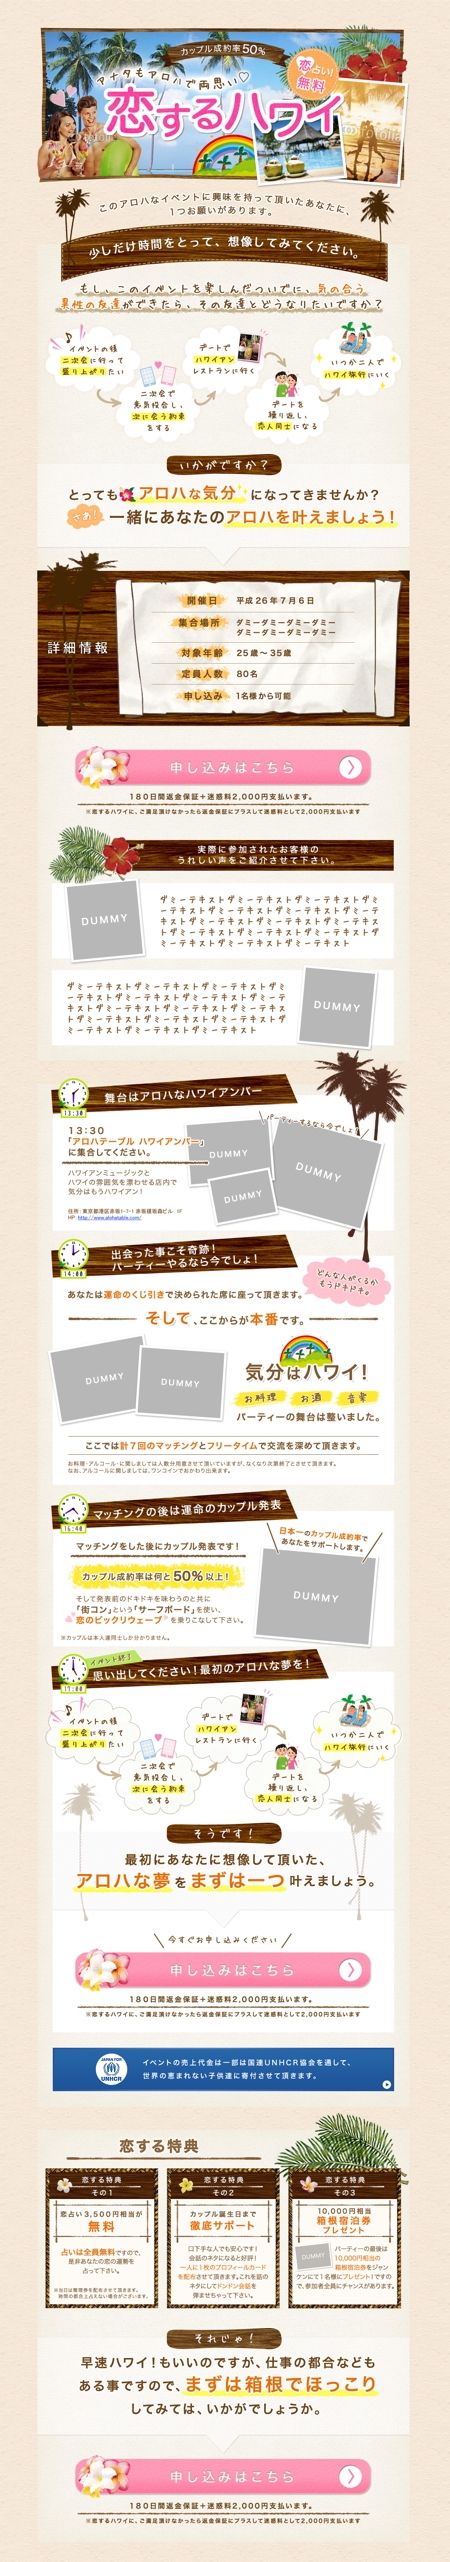 Designer・T (takikawa)さんの街コンイベント「恋するハワイ」のランディングページへの提案